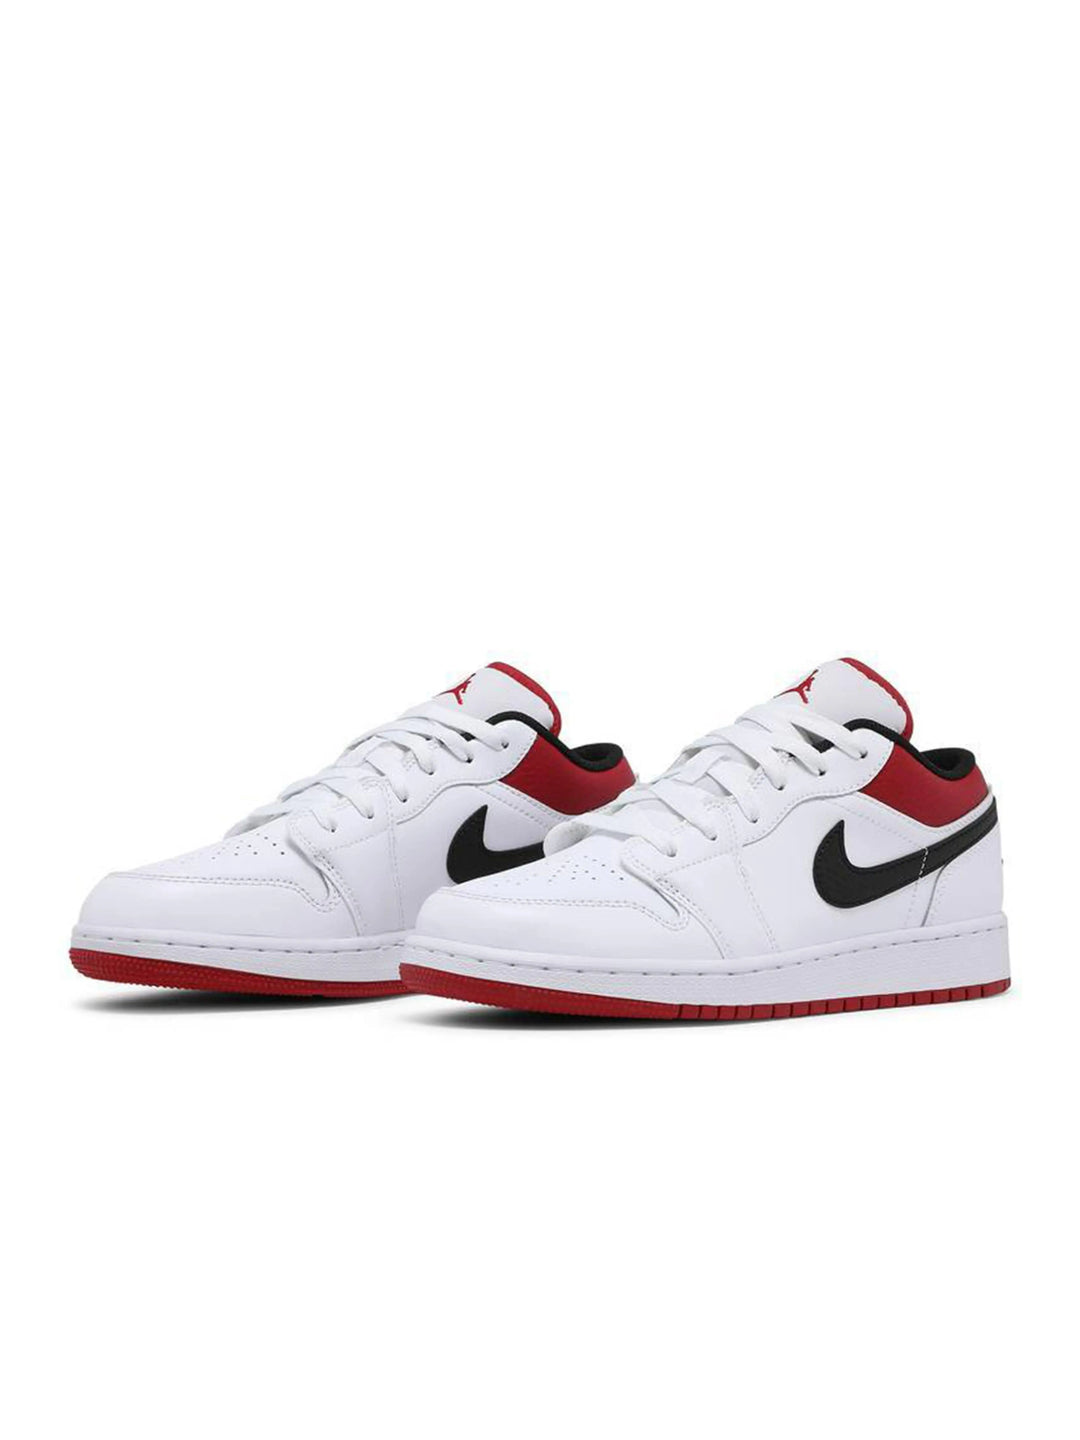 Nike Air Jordan 1 Low White Gym Red Prior